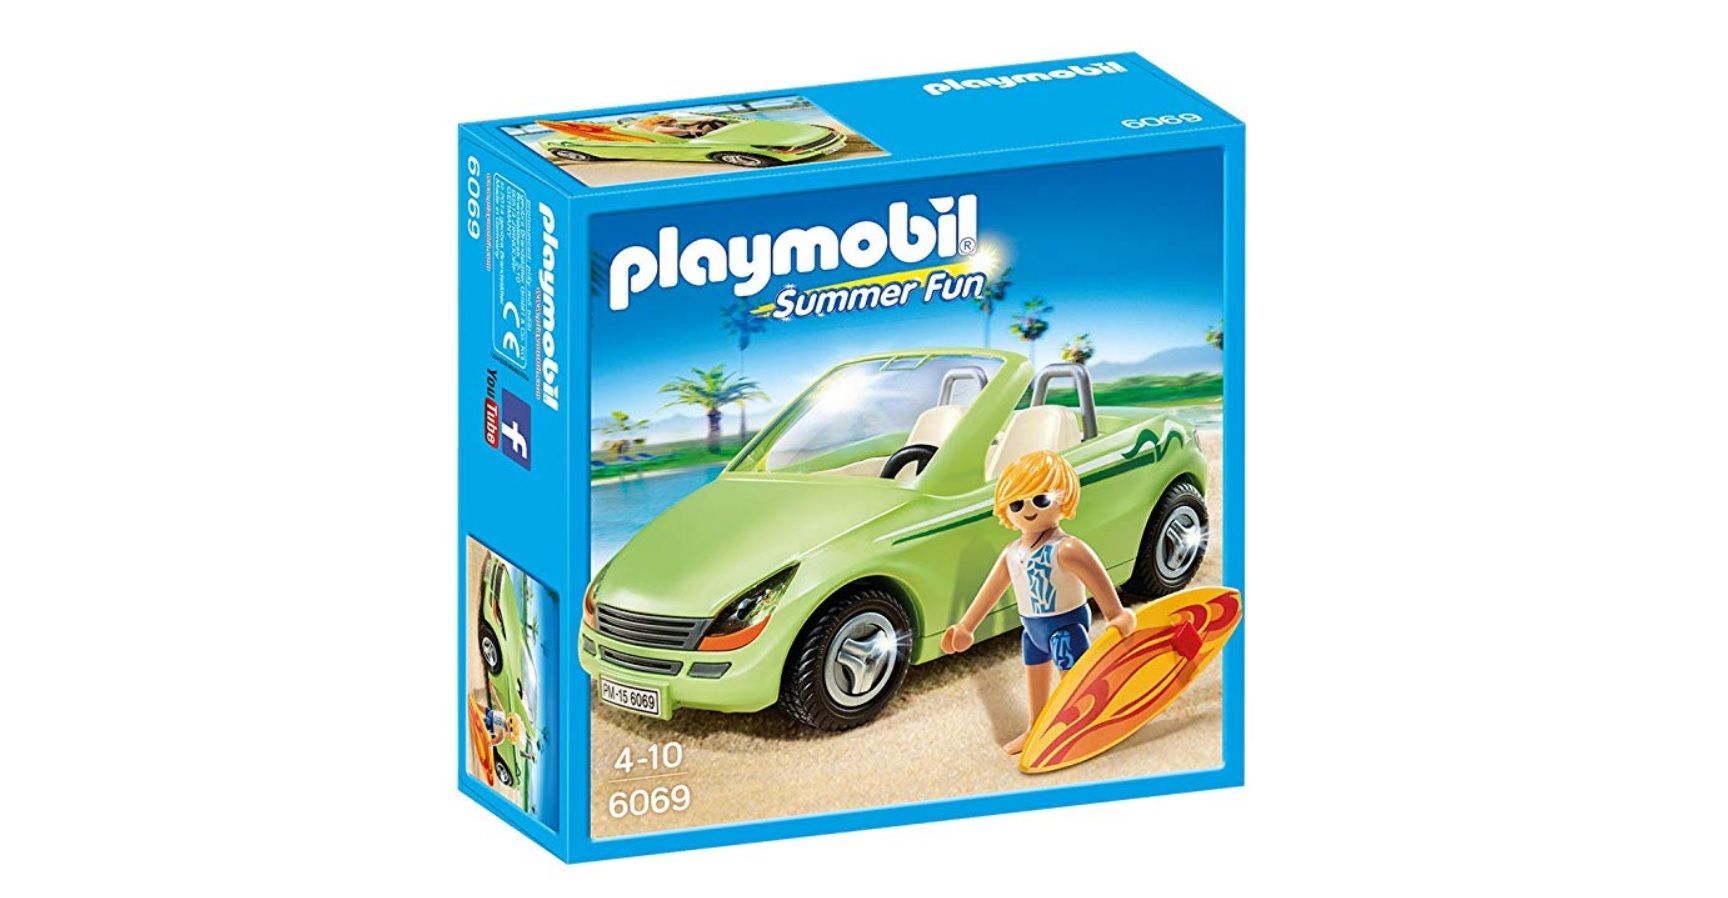 ¡Chollazo plus! PlayMobil Surfista con descapotable (60690) por sólo 5€ (antes 14,95€)